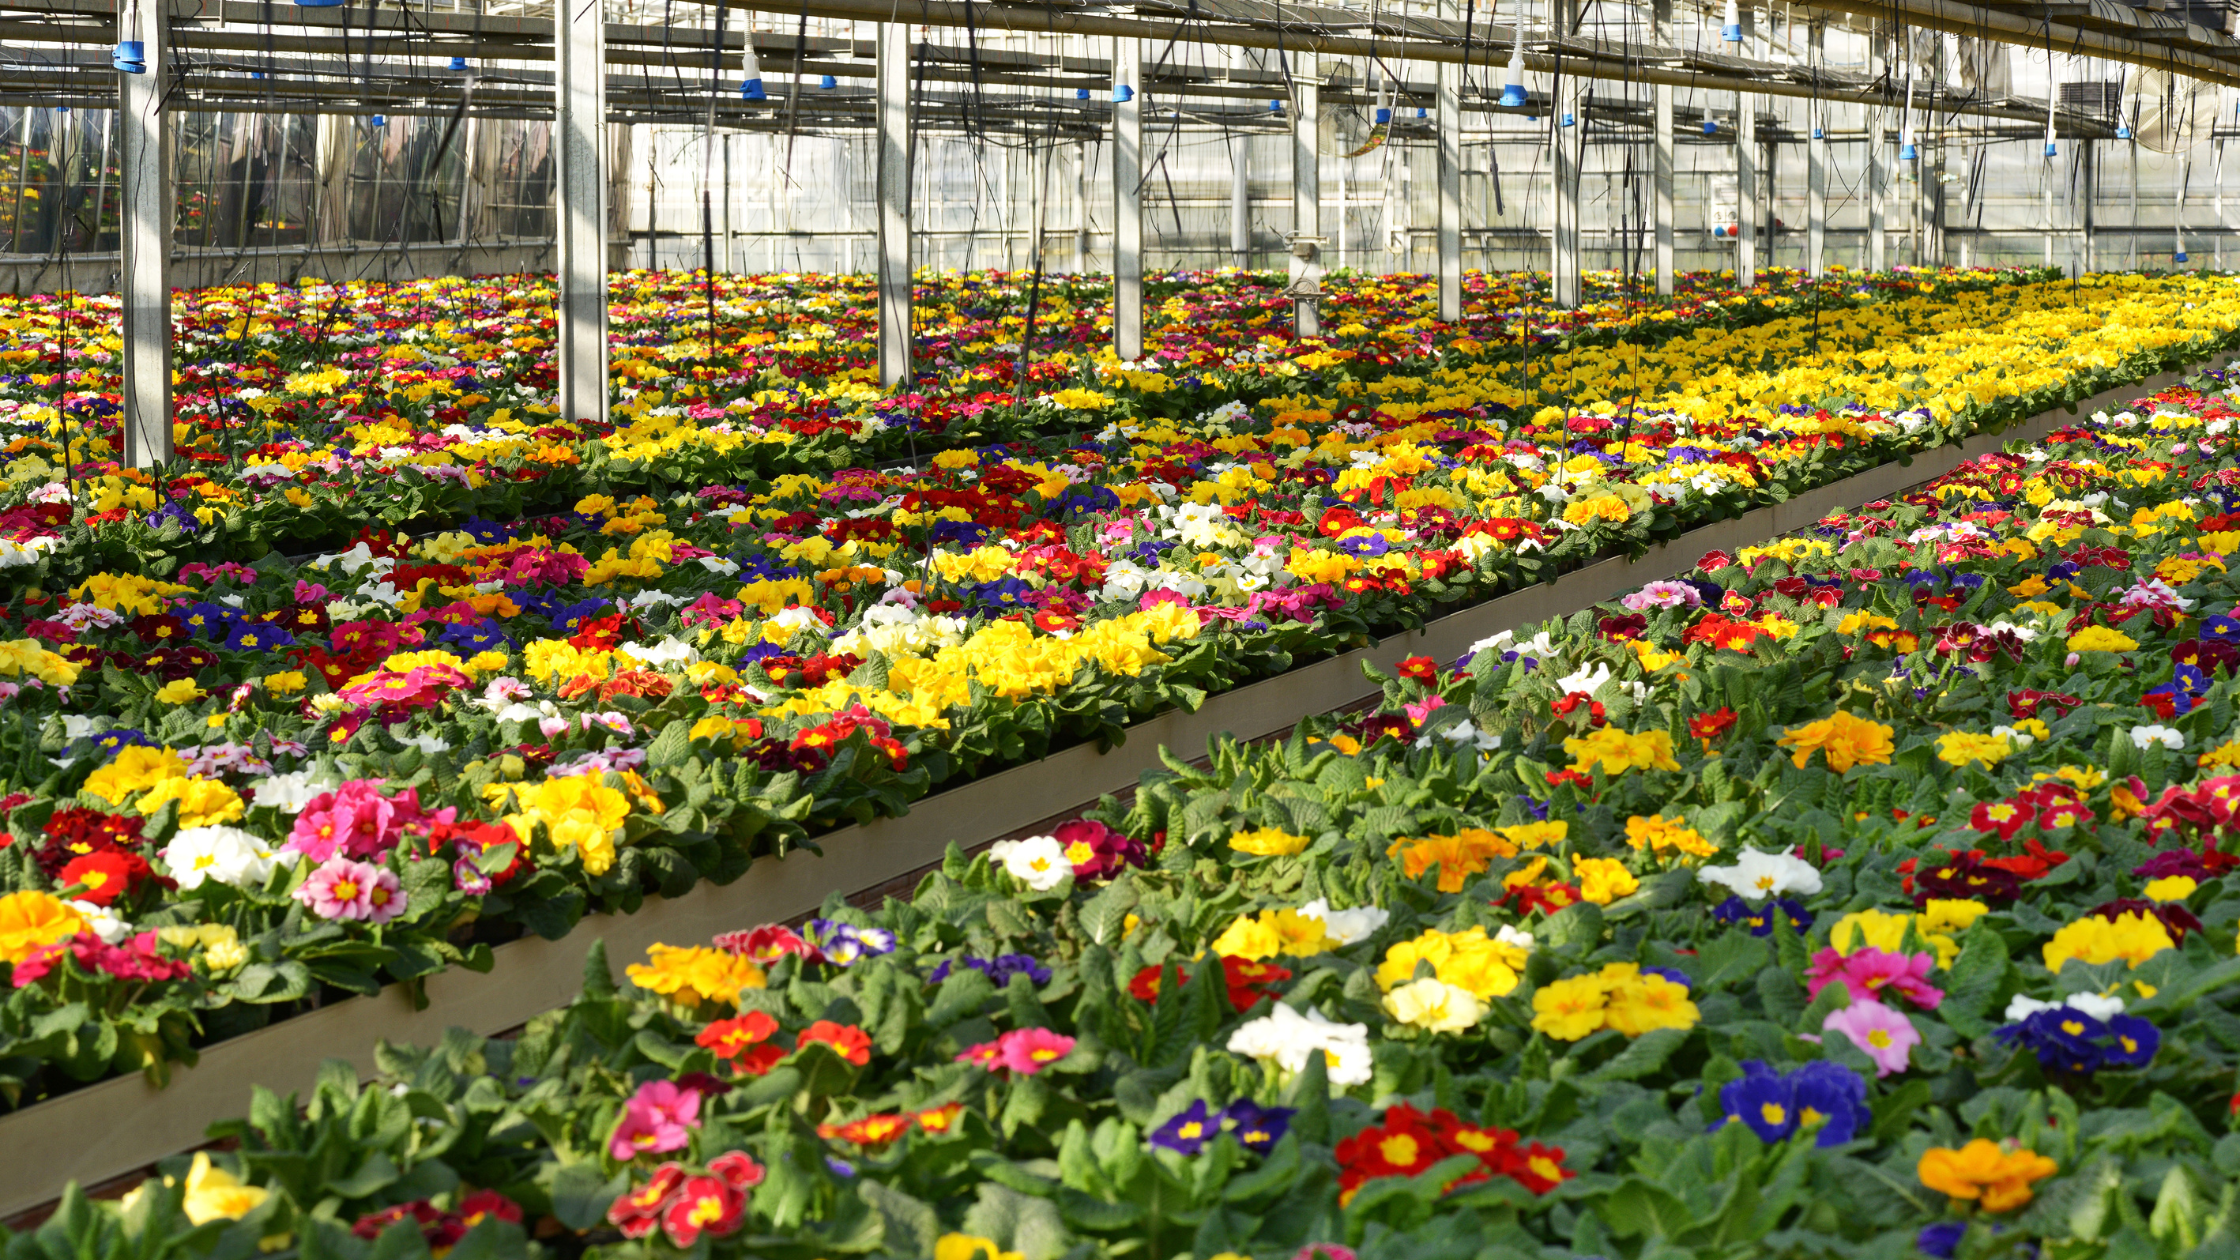 Revelando los costos ocultos de la industria de las flores cortadas: explotación laboral en la industria de las flores